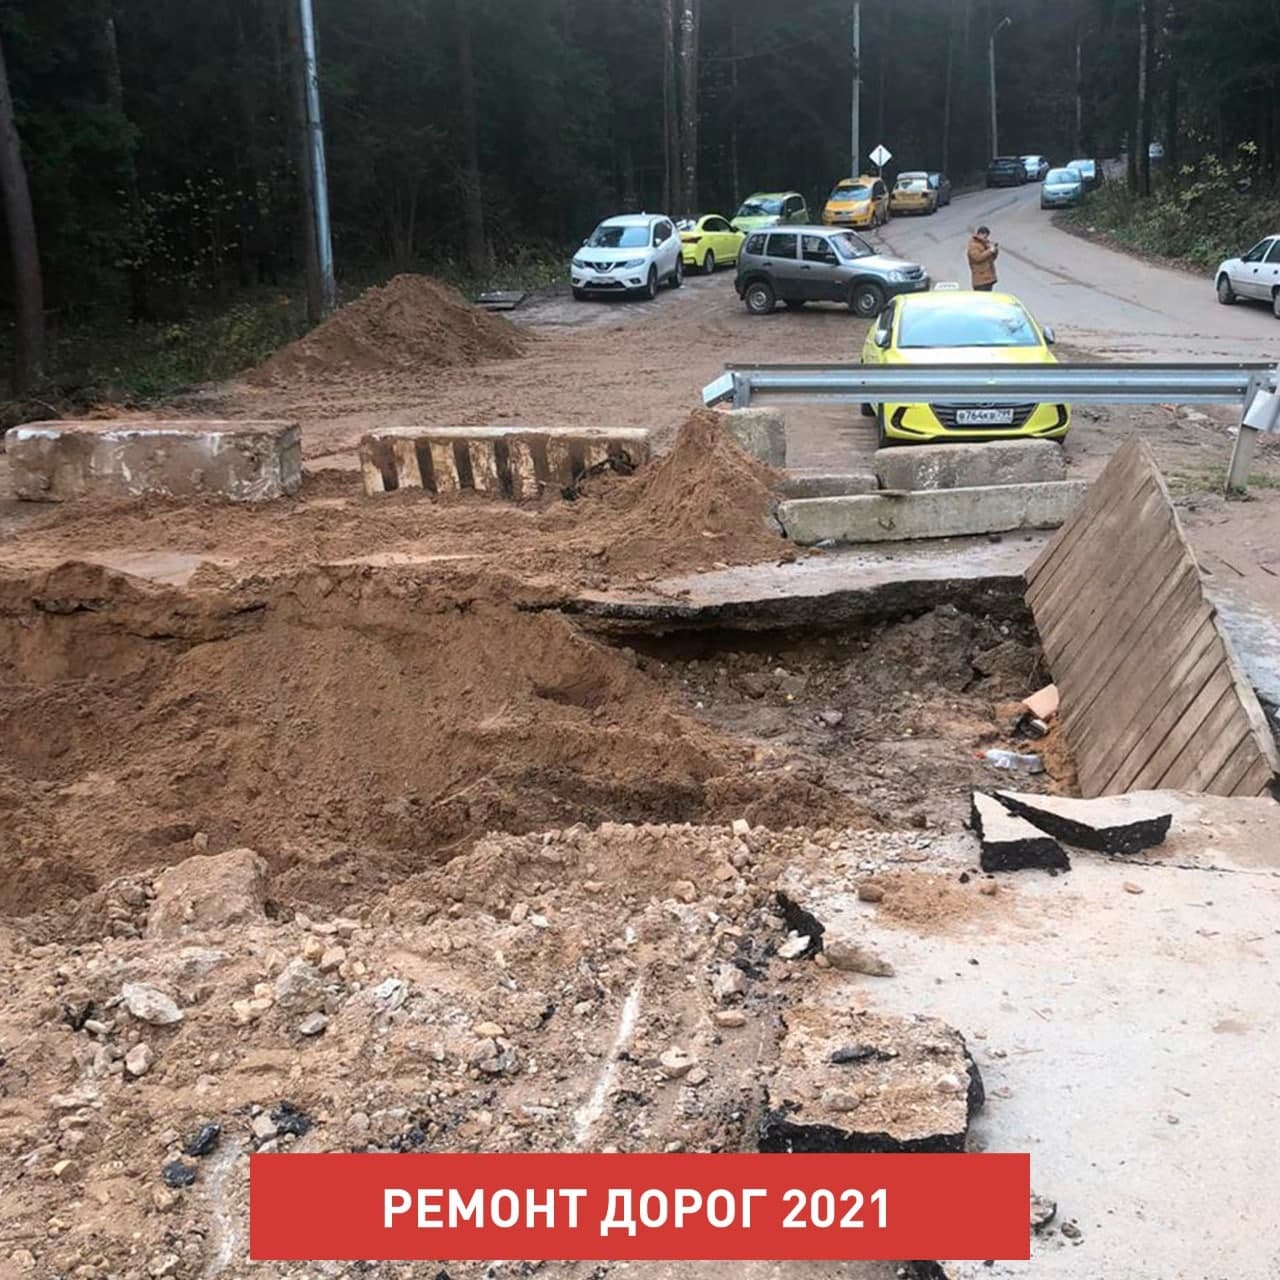 В 2021 году начнется ремонт автодороги на Сабурово